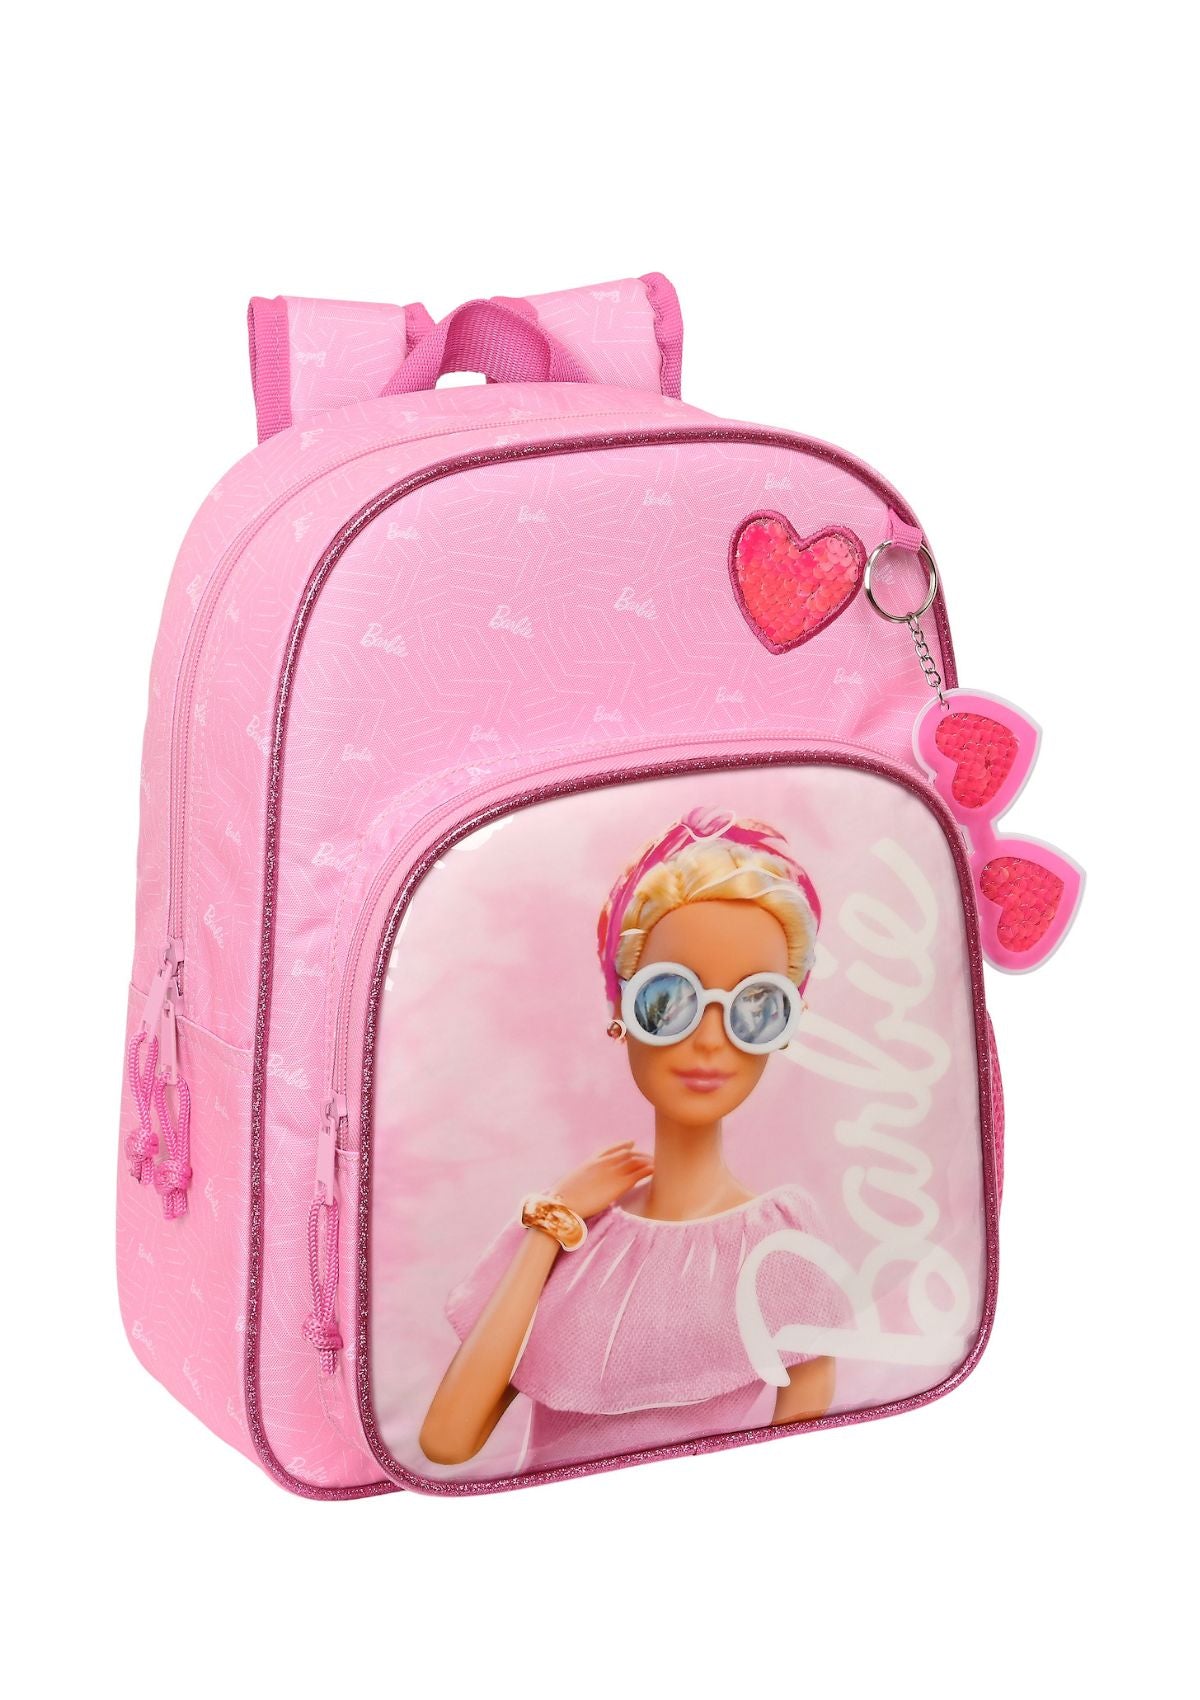 Safta Small Bagpack Barbie front